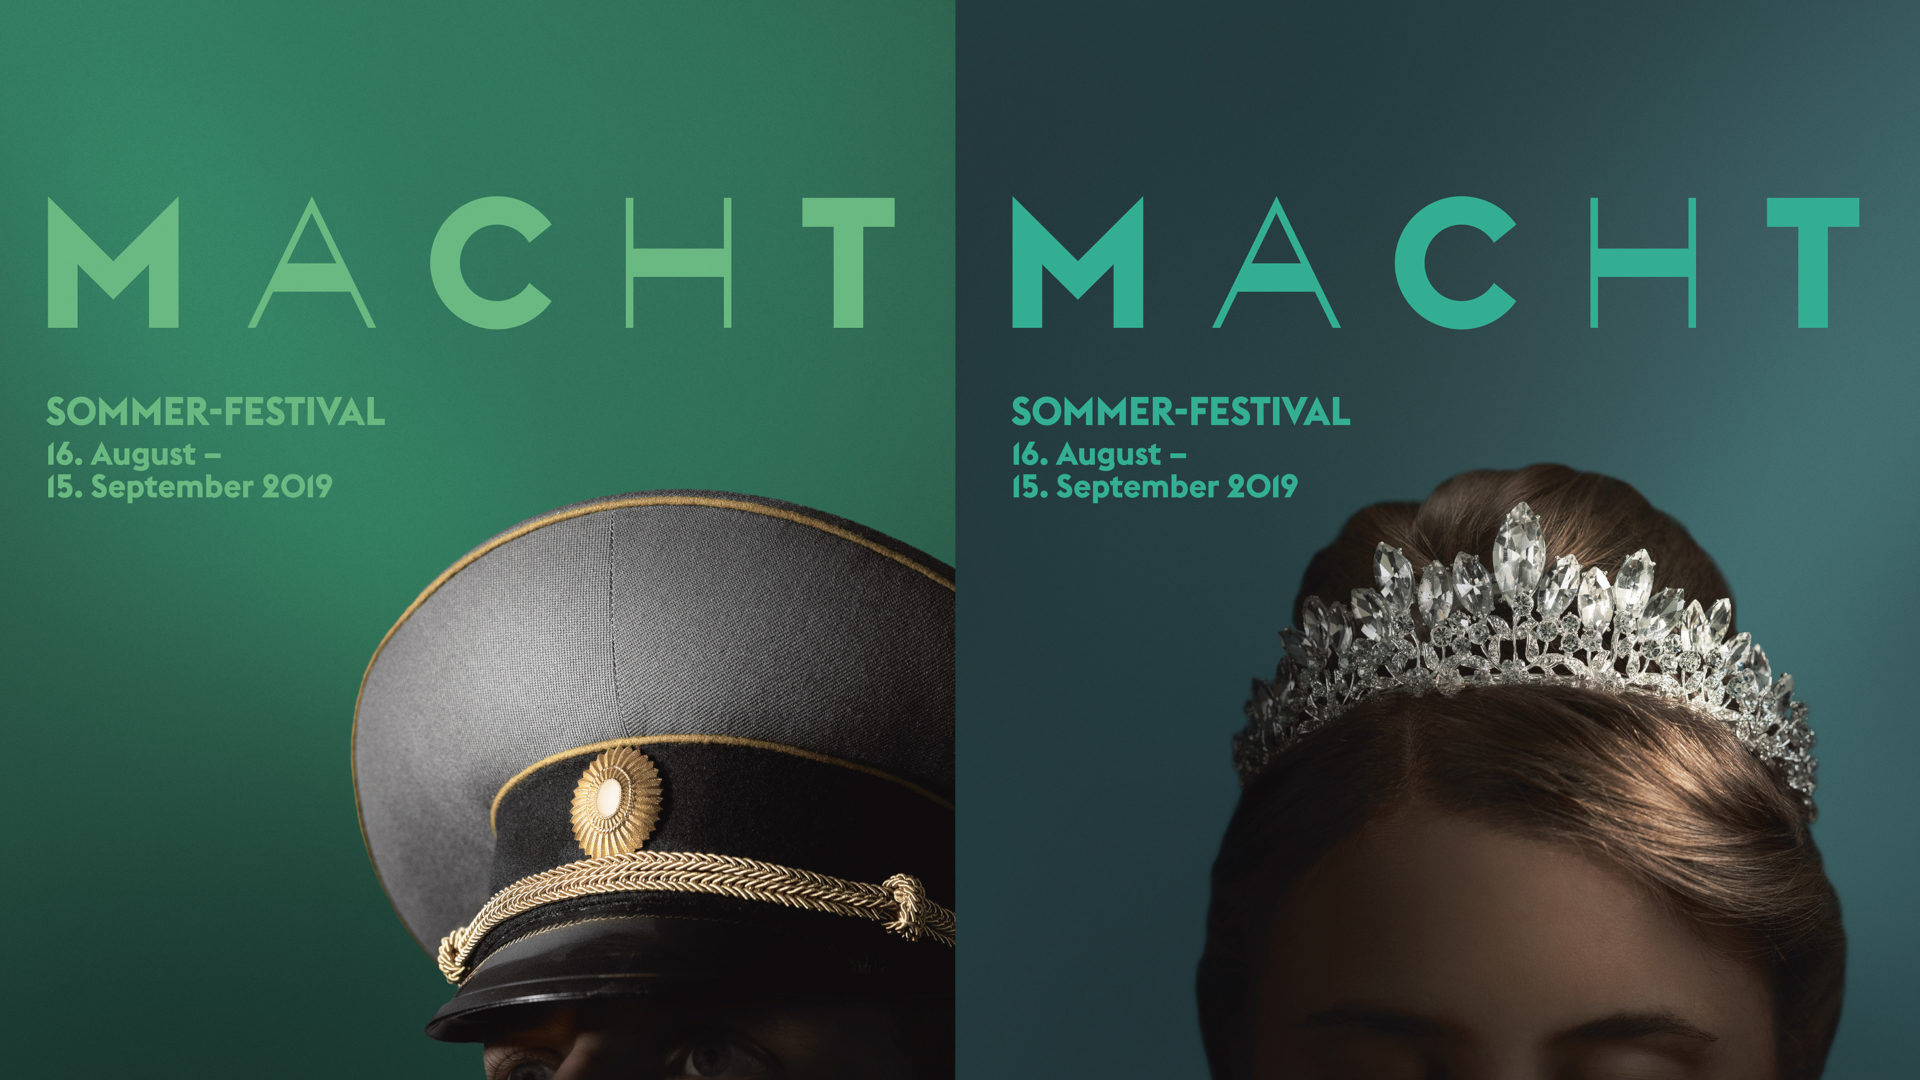 Auch ein Militärhut und eine Krone werben für das Lucerne Festival (Plakatausschnitte).